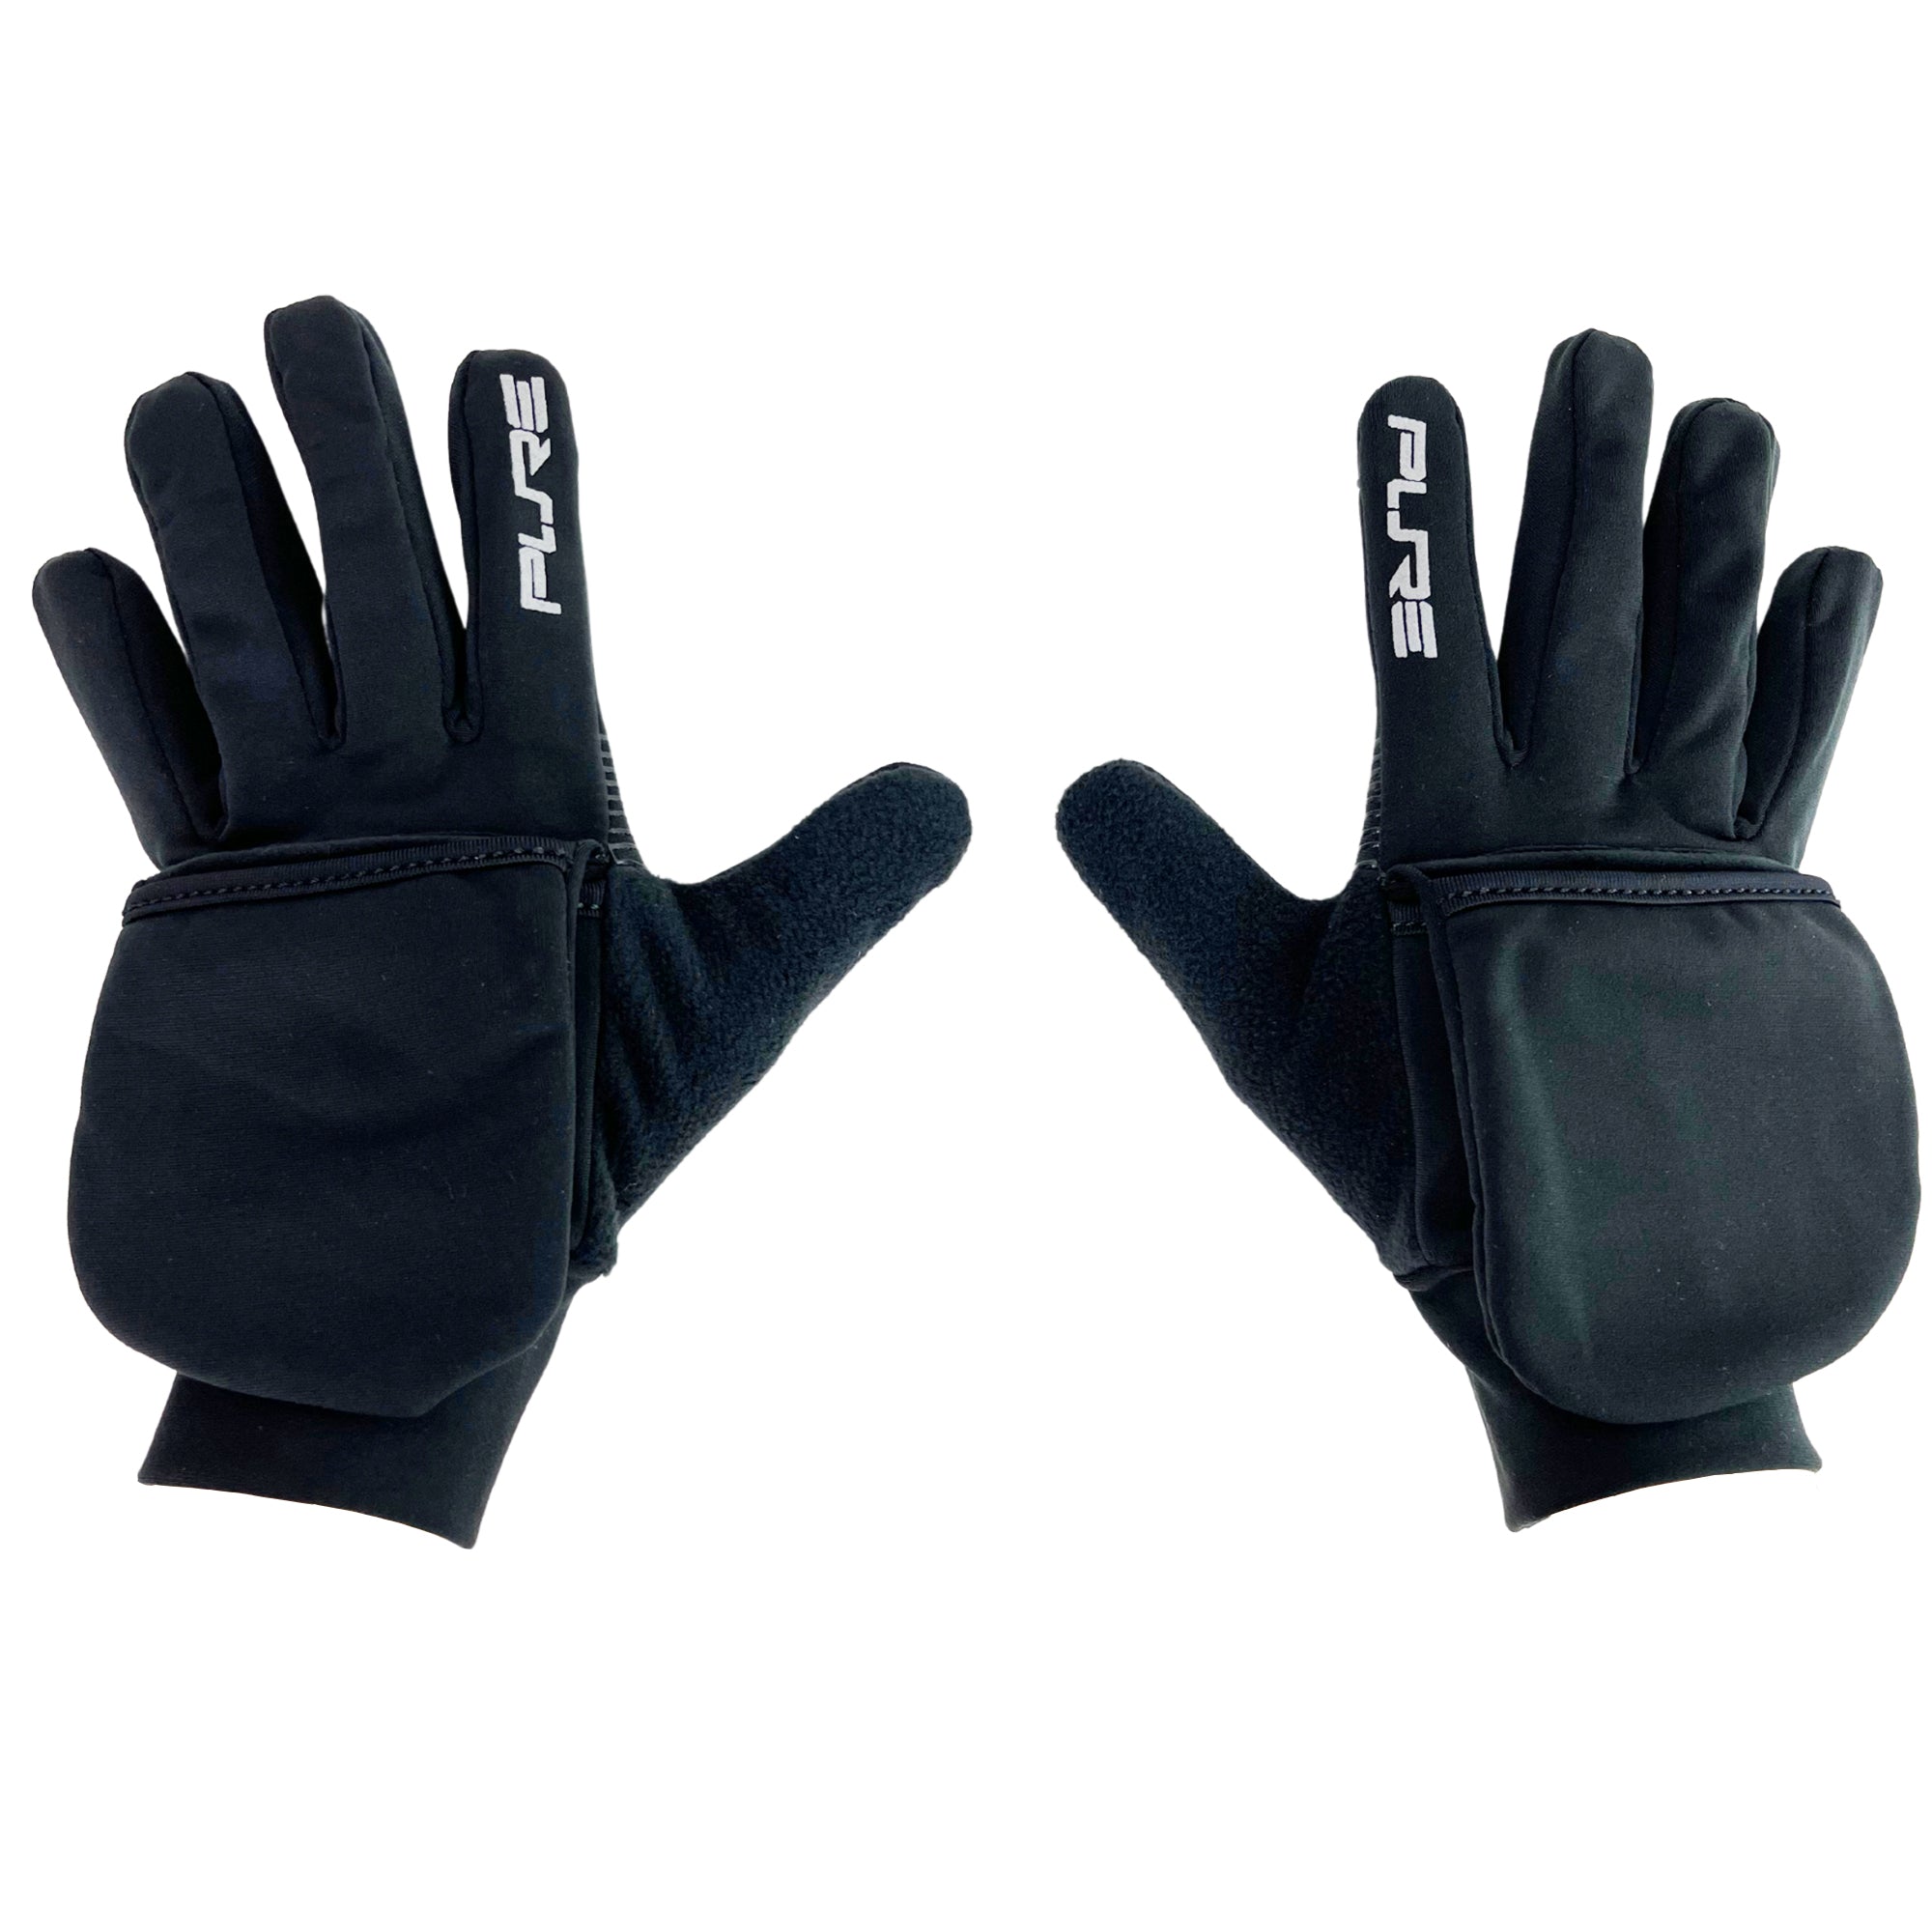 Convertible Running Gloves/Mittens